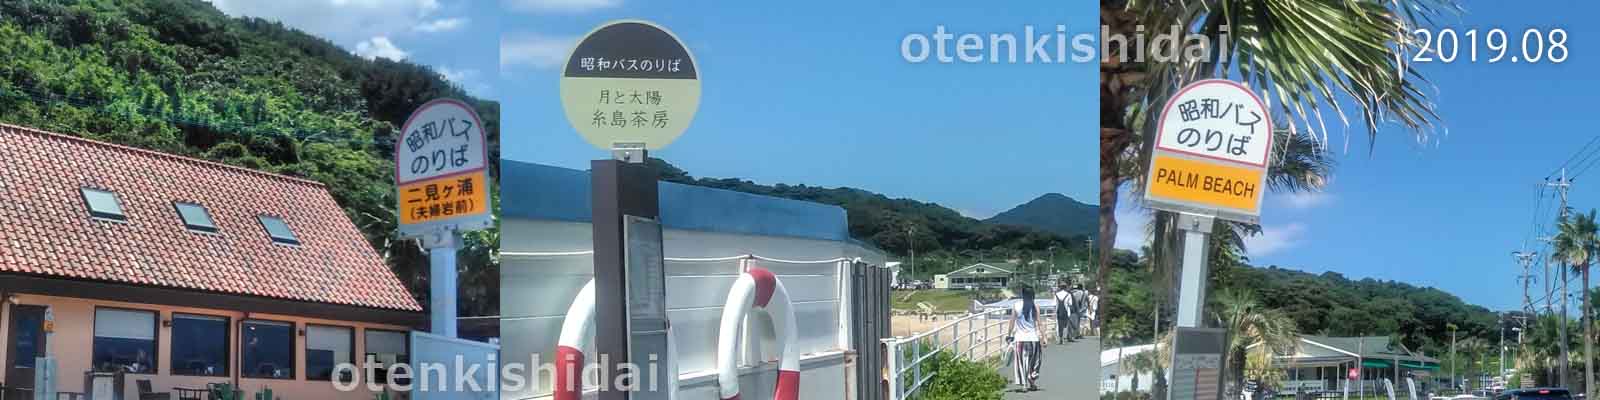 桜井二見ヶ浦の海辺のバス停